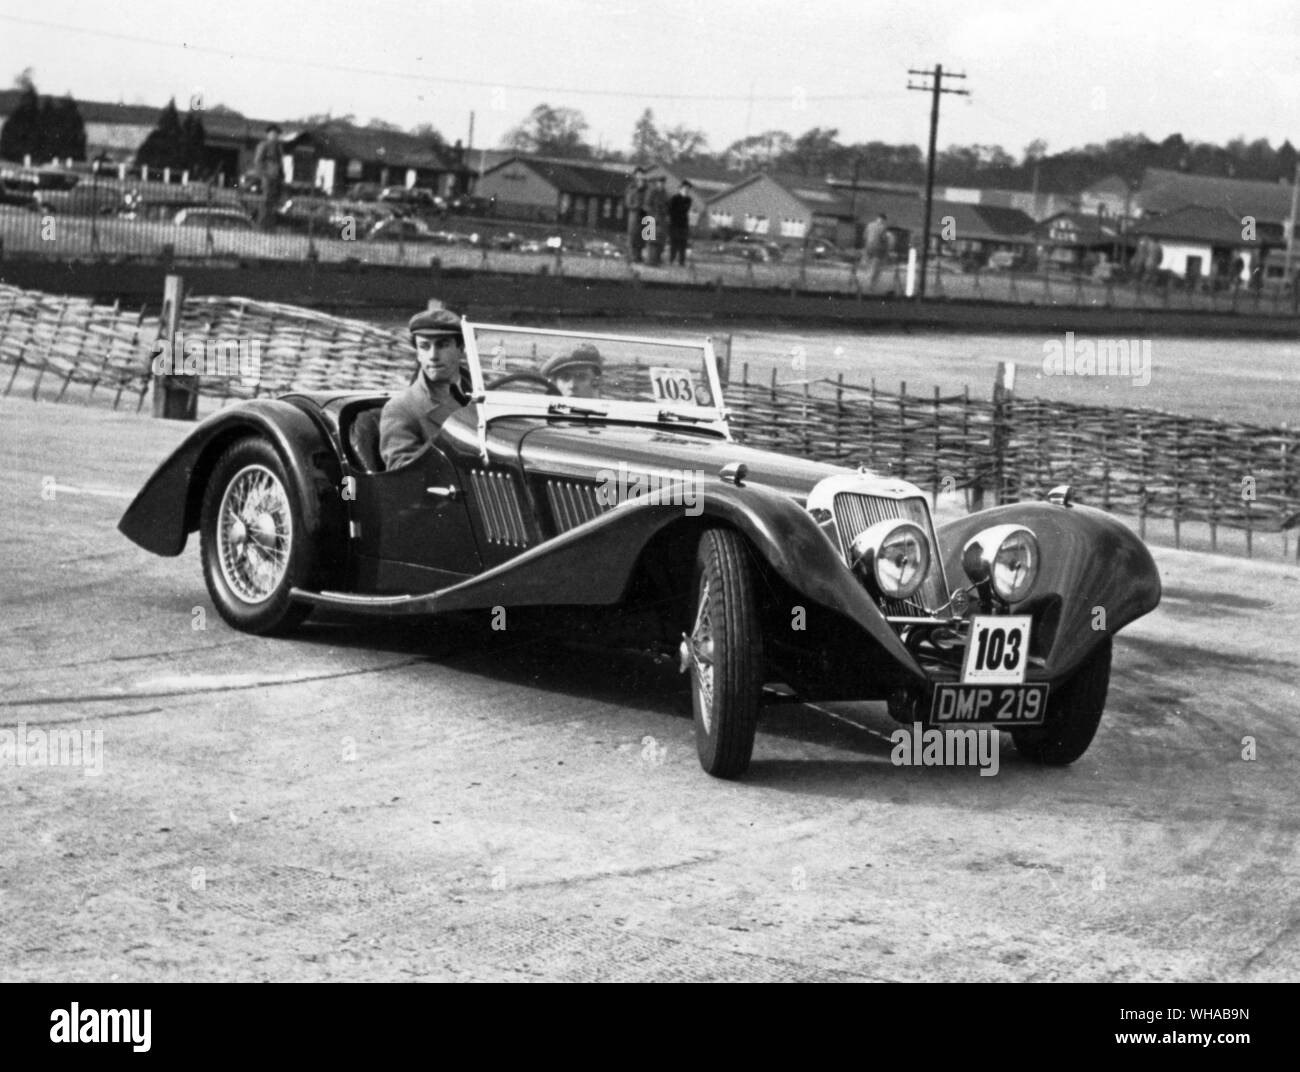 Prototipo scudiero del 1934 prendendo parte al test di guida a Croydon in 1939. Questa vettura è ora parte di Harrah's collezione di automobili a Reno, Nevada Foto Stock